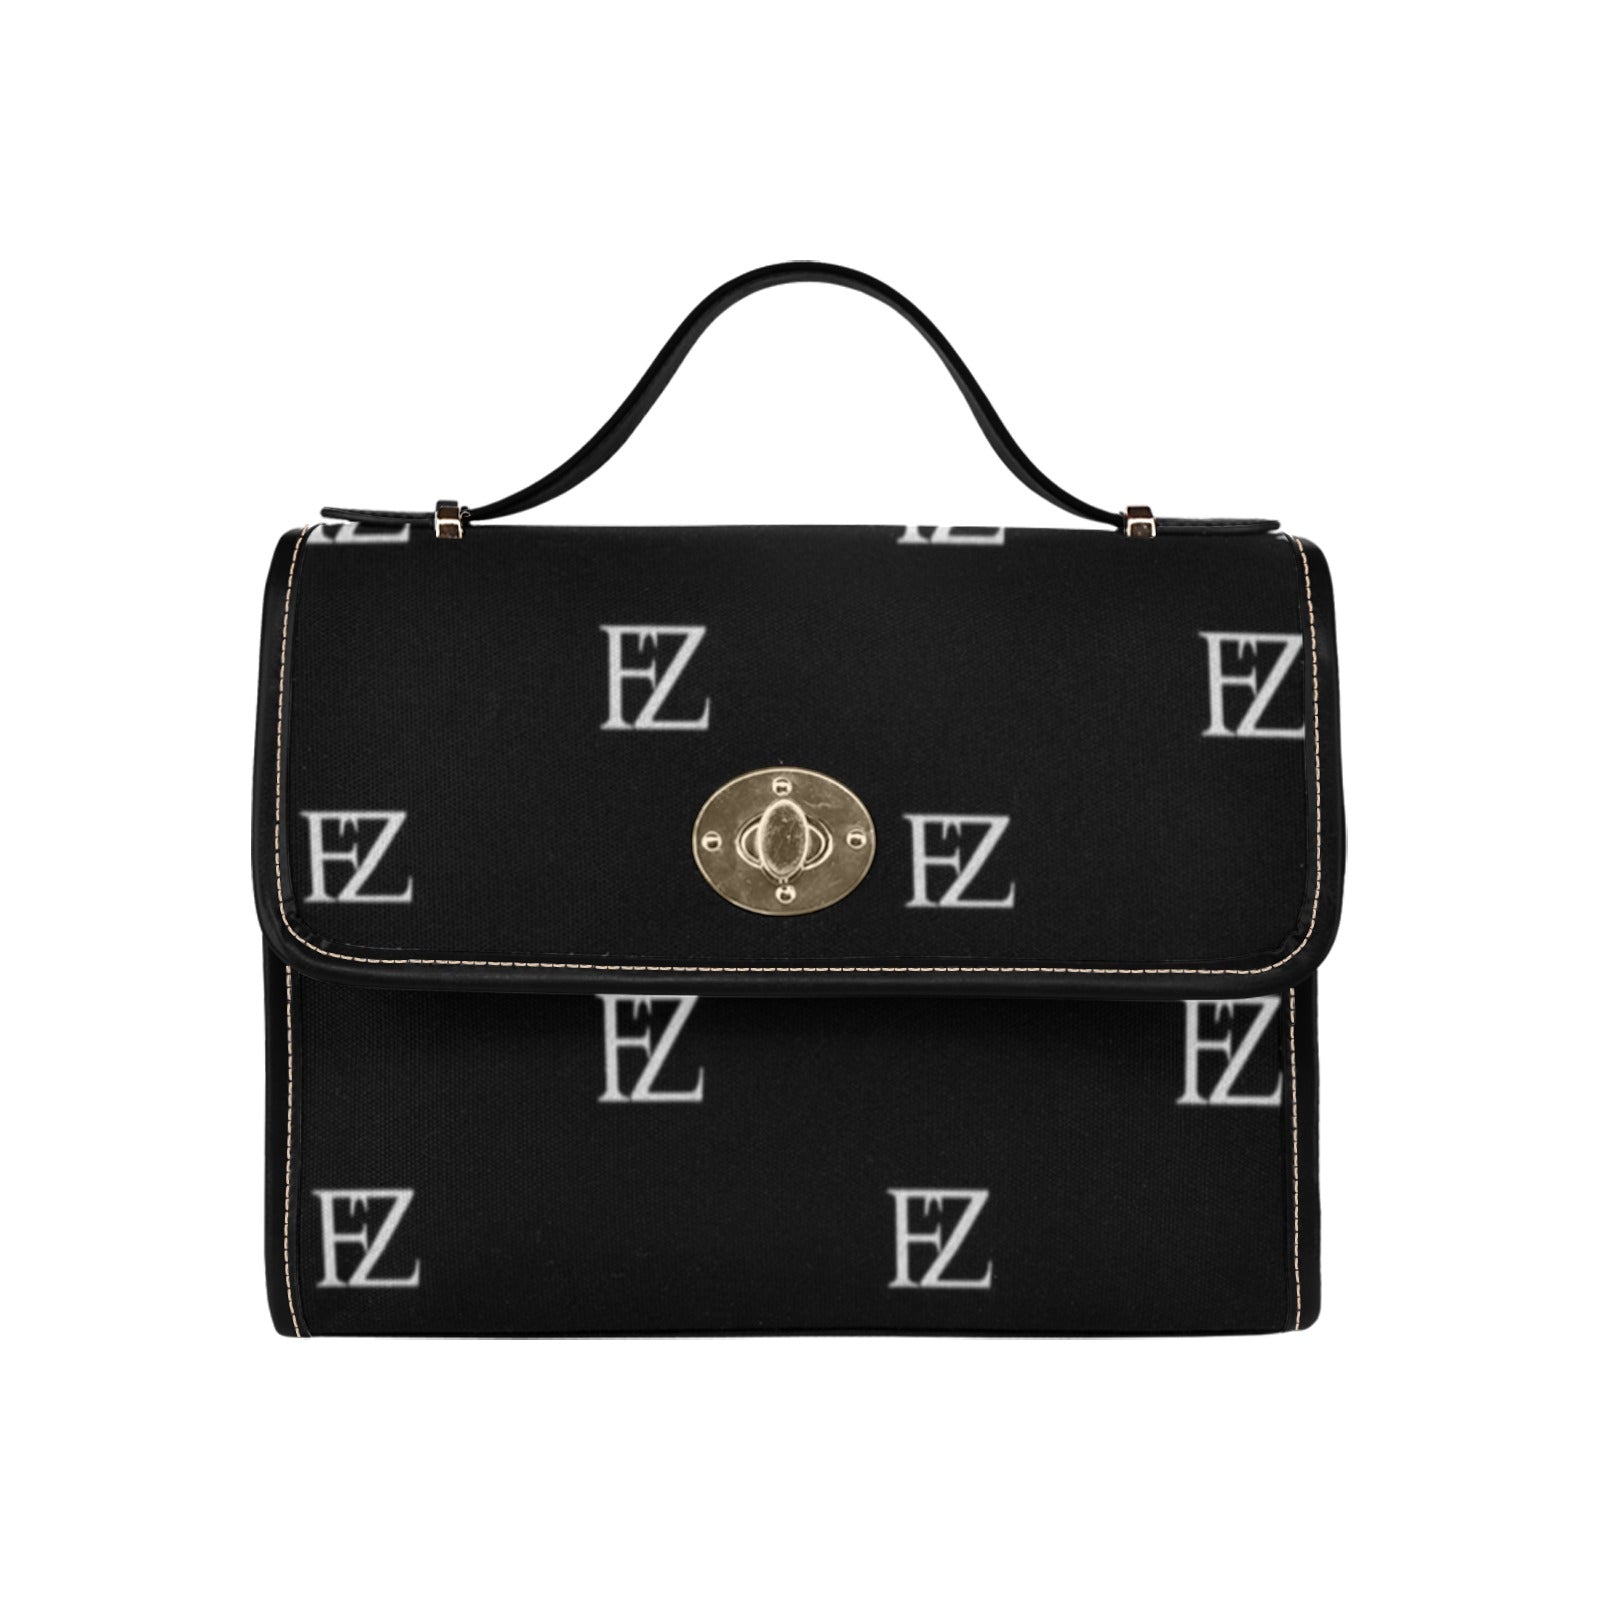 fz original "black trim" handbag one size / fz original handbag all over print canvas bag (model 1641)(black)